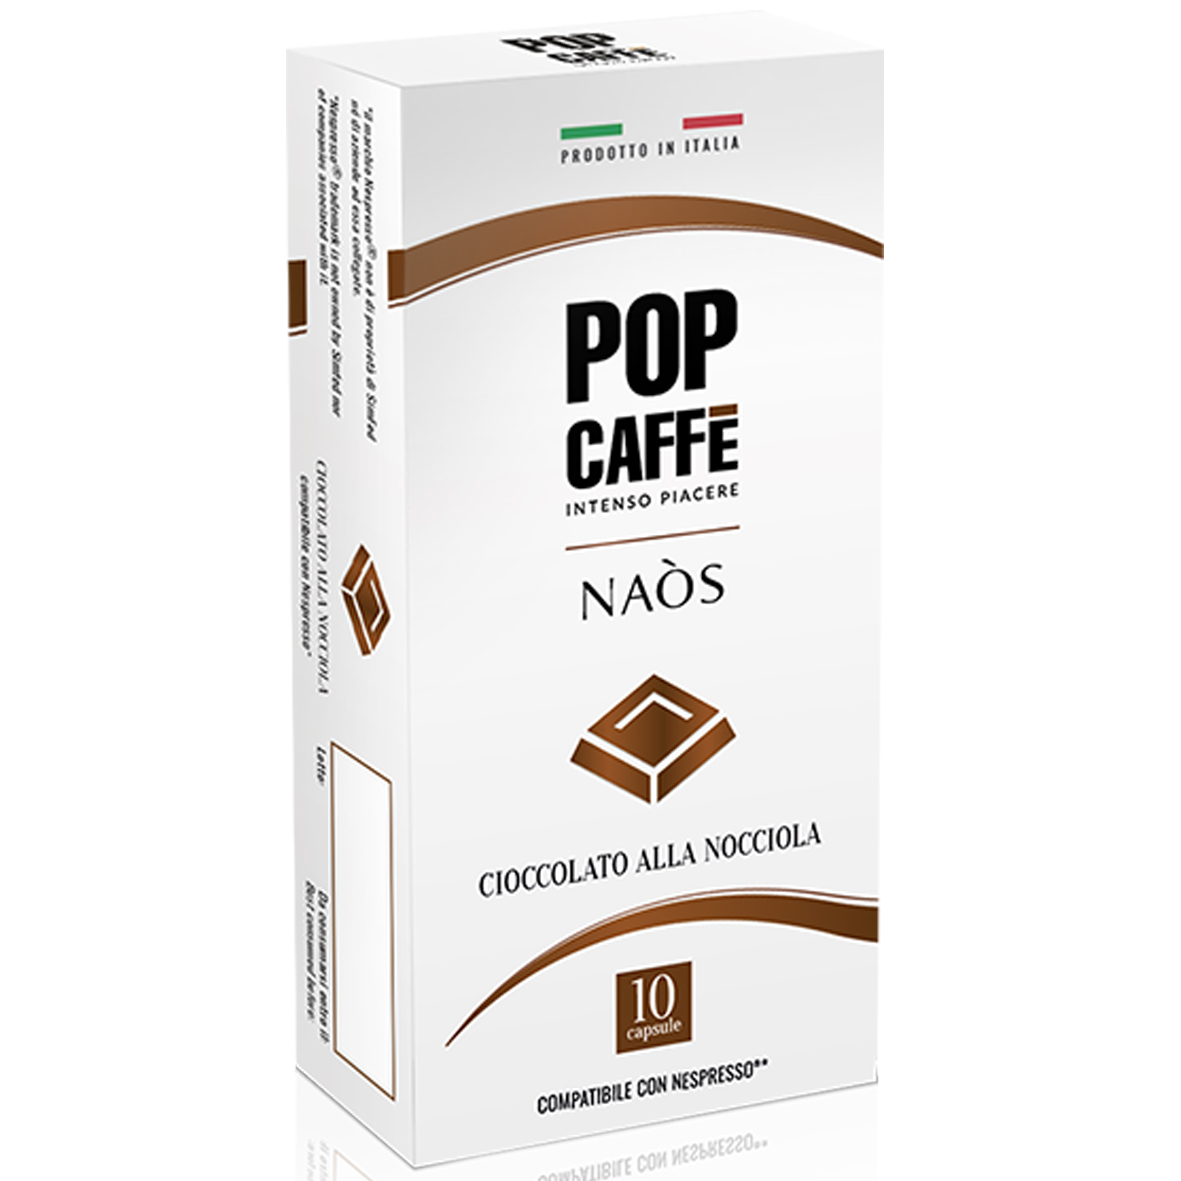 Pop Caffe' Naos Cioconocciola x10